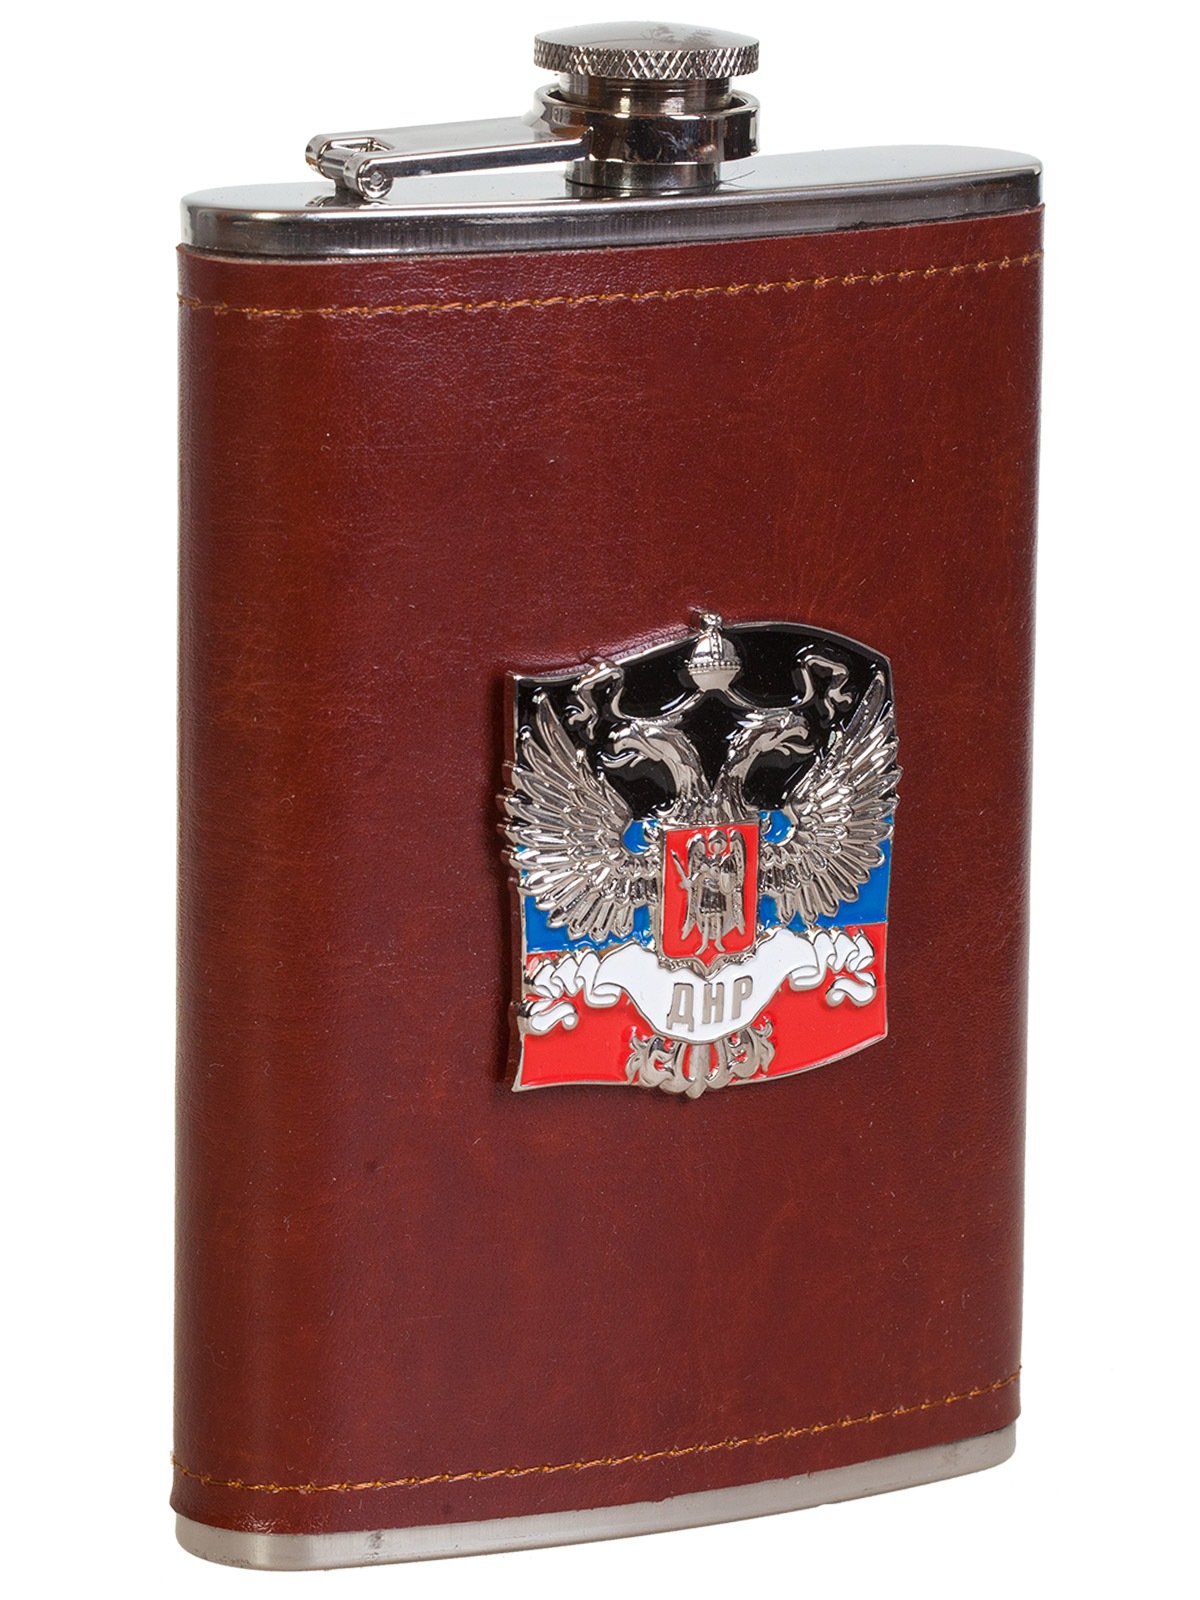 Плоская нержавеющая фляжка в чехле с накладкой ДНР 